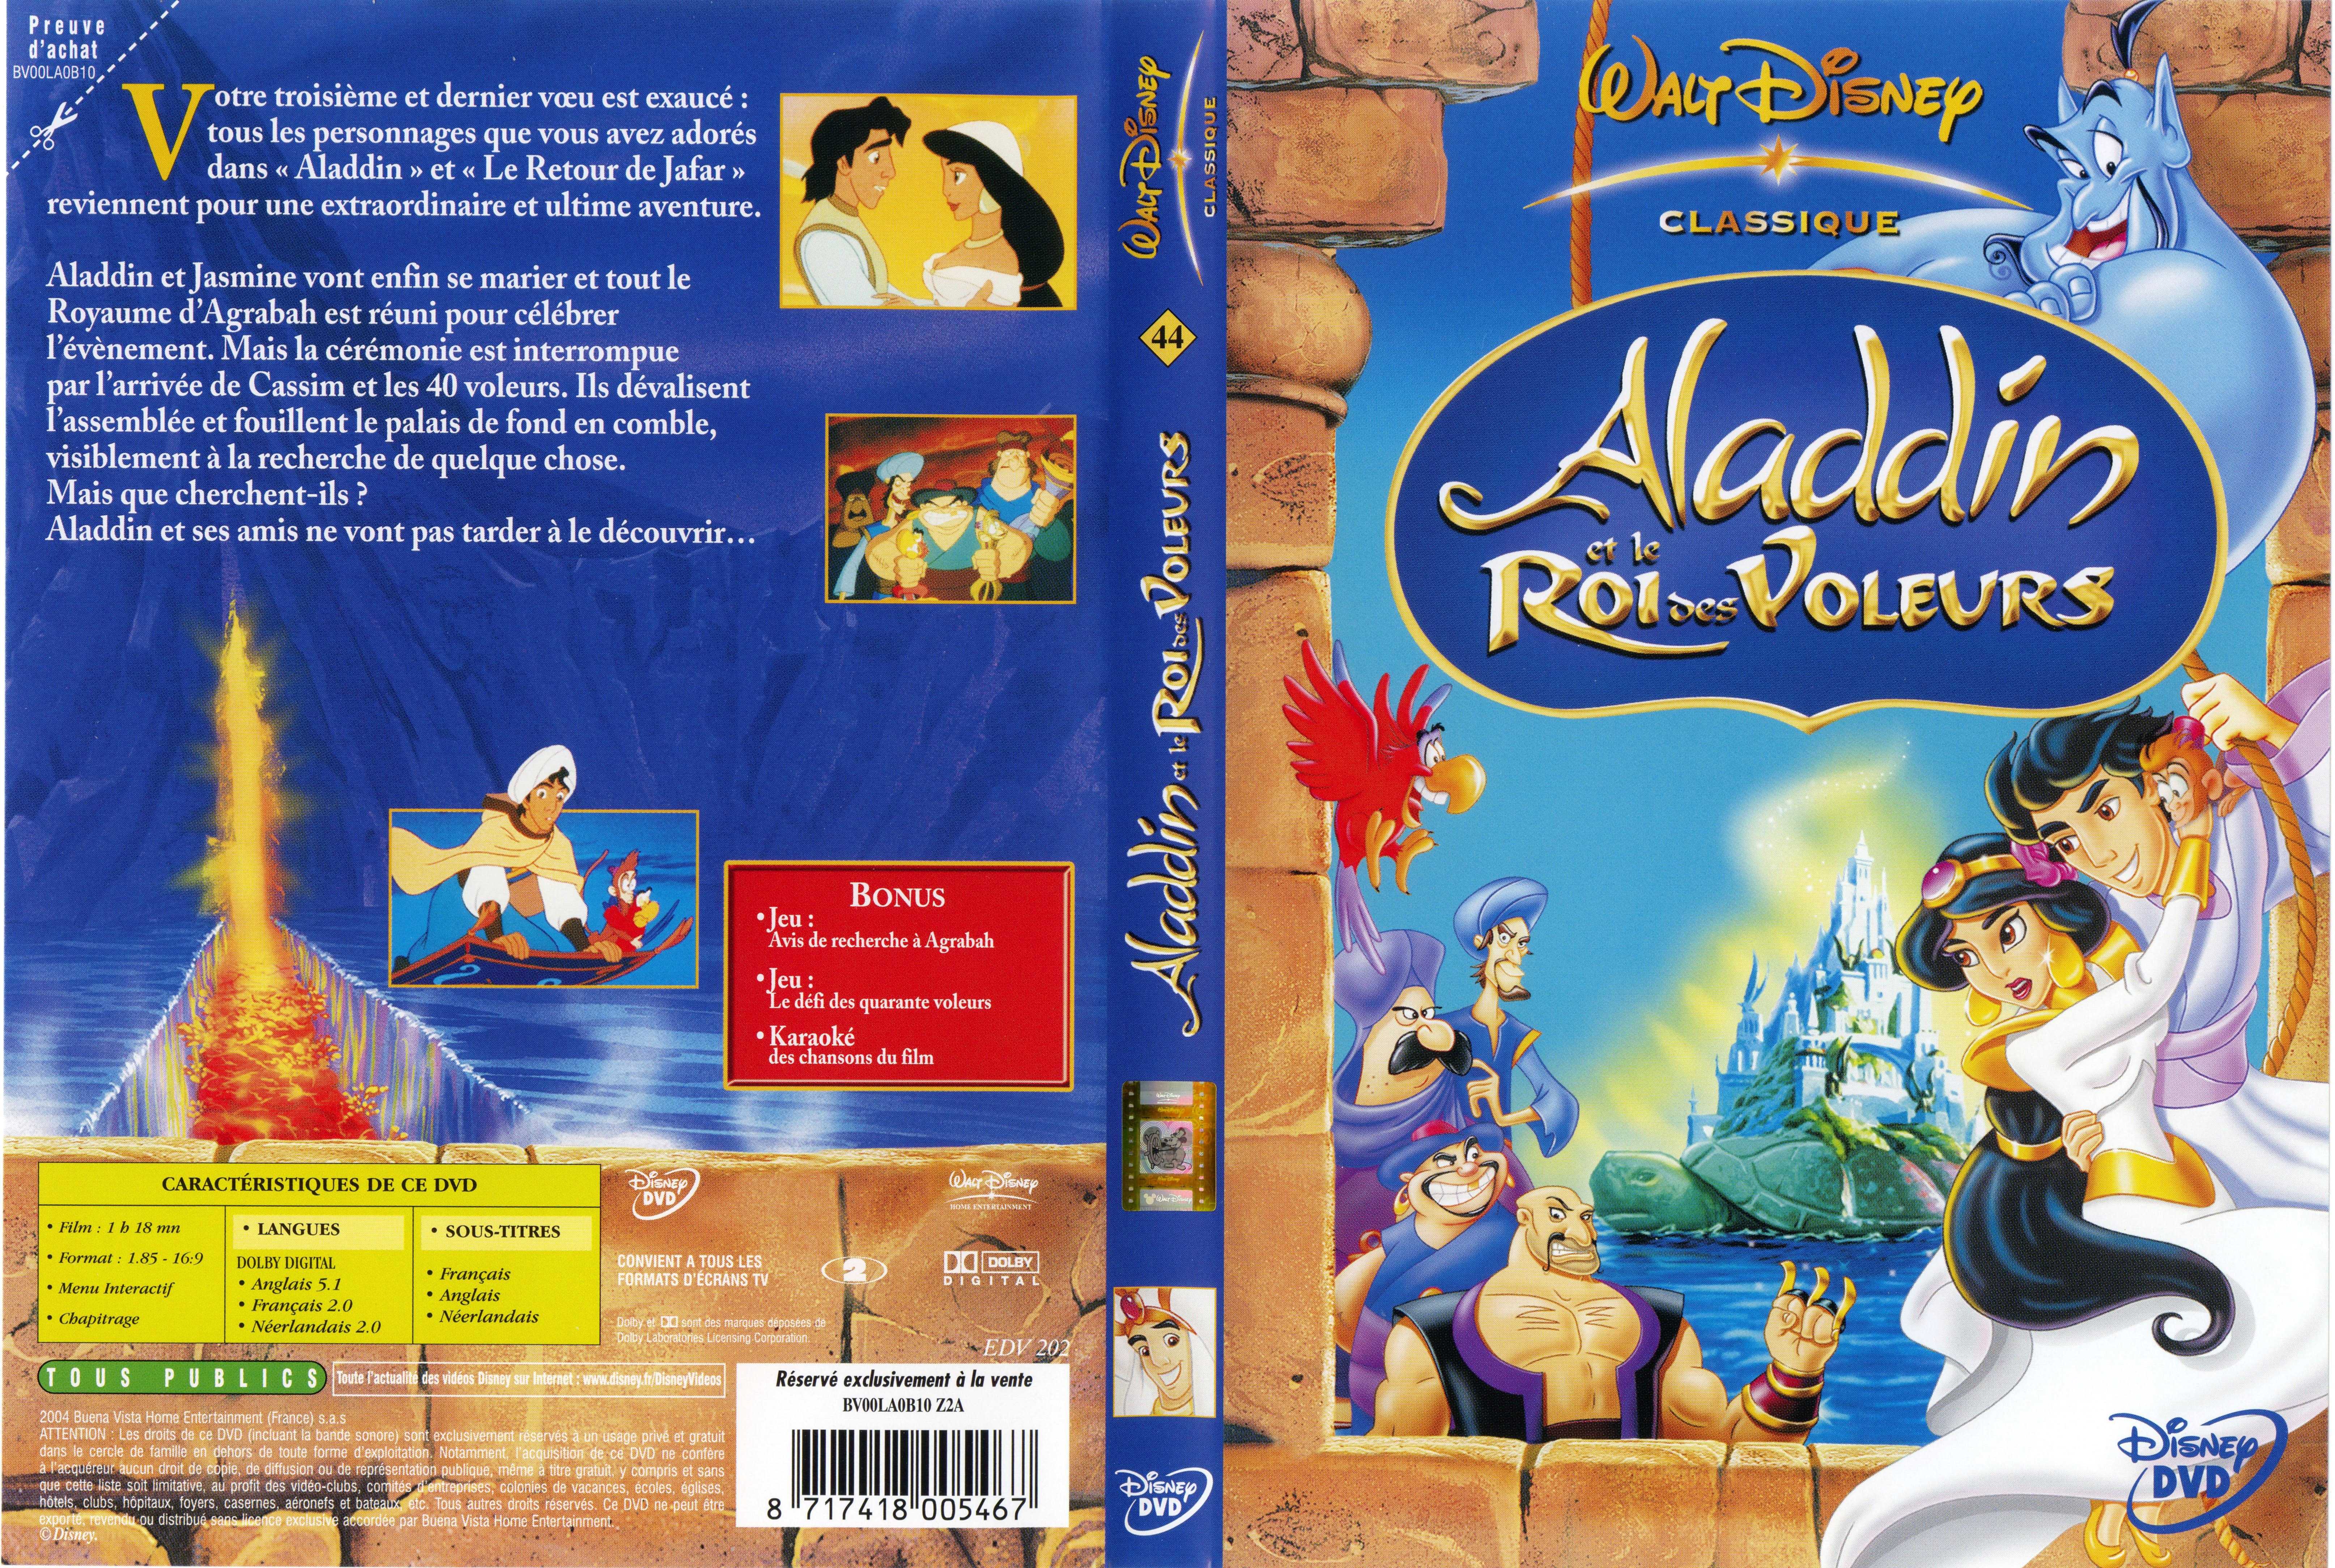 Jaquette DVD Aladdin et le roi des voleurs v2